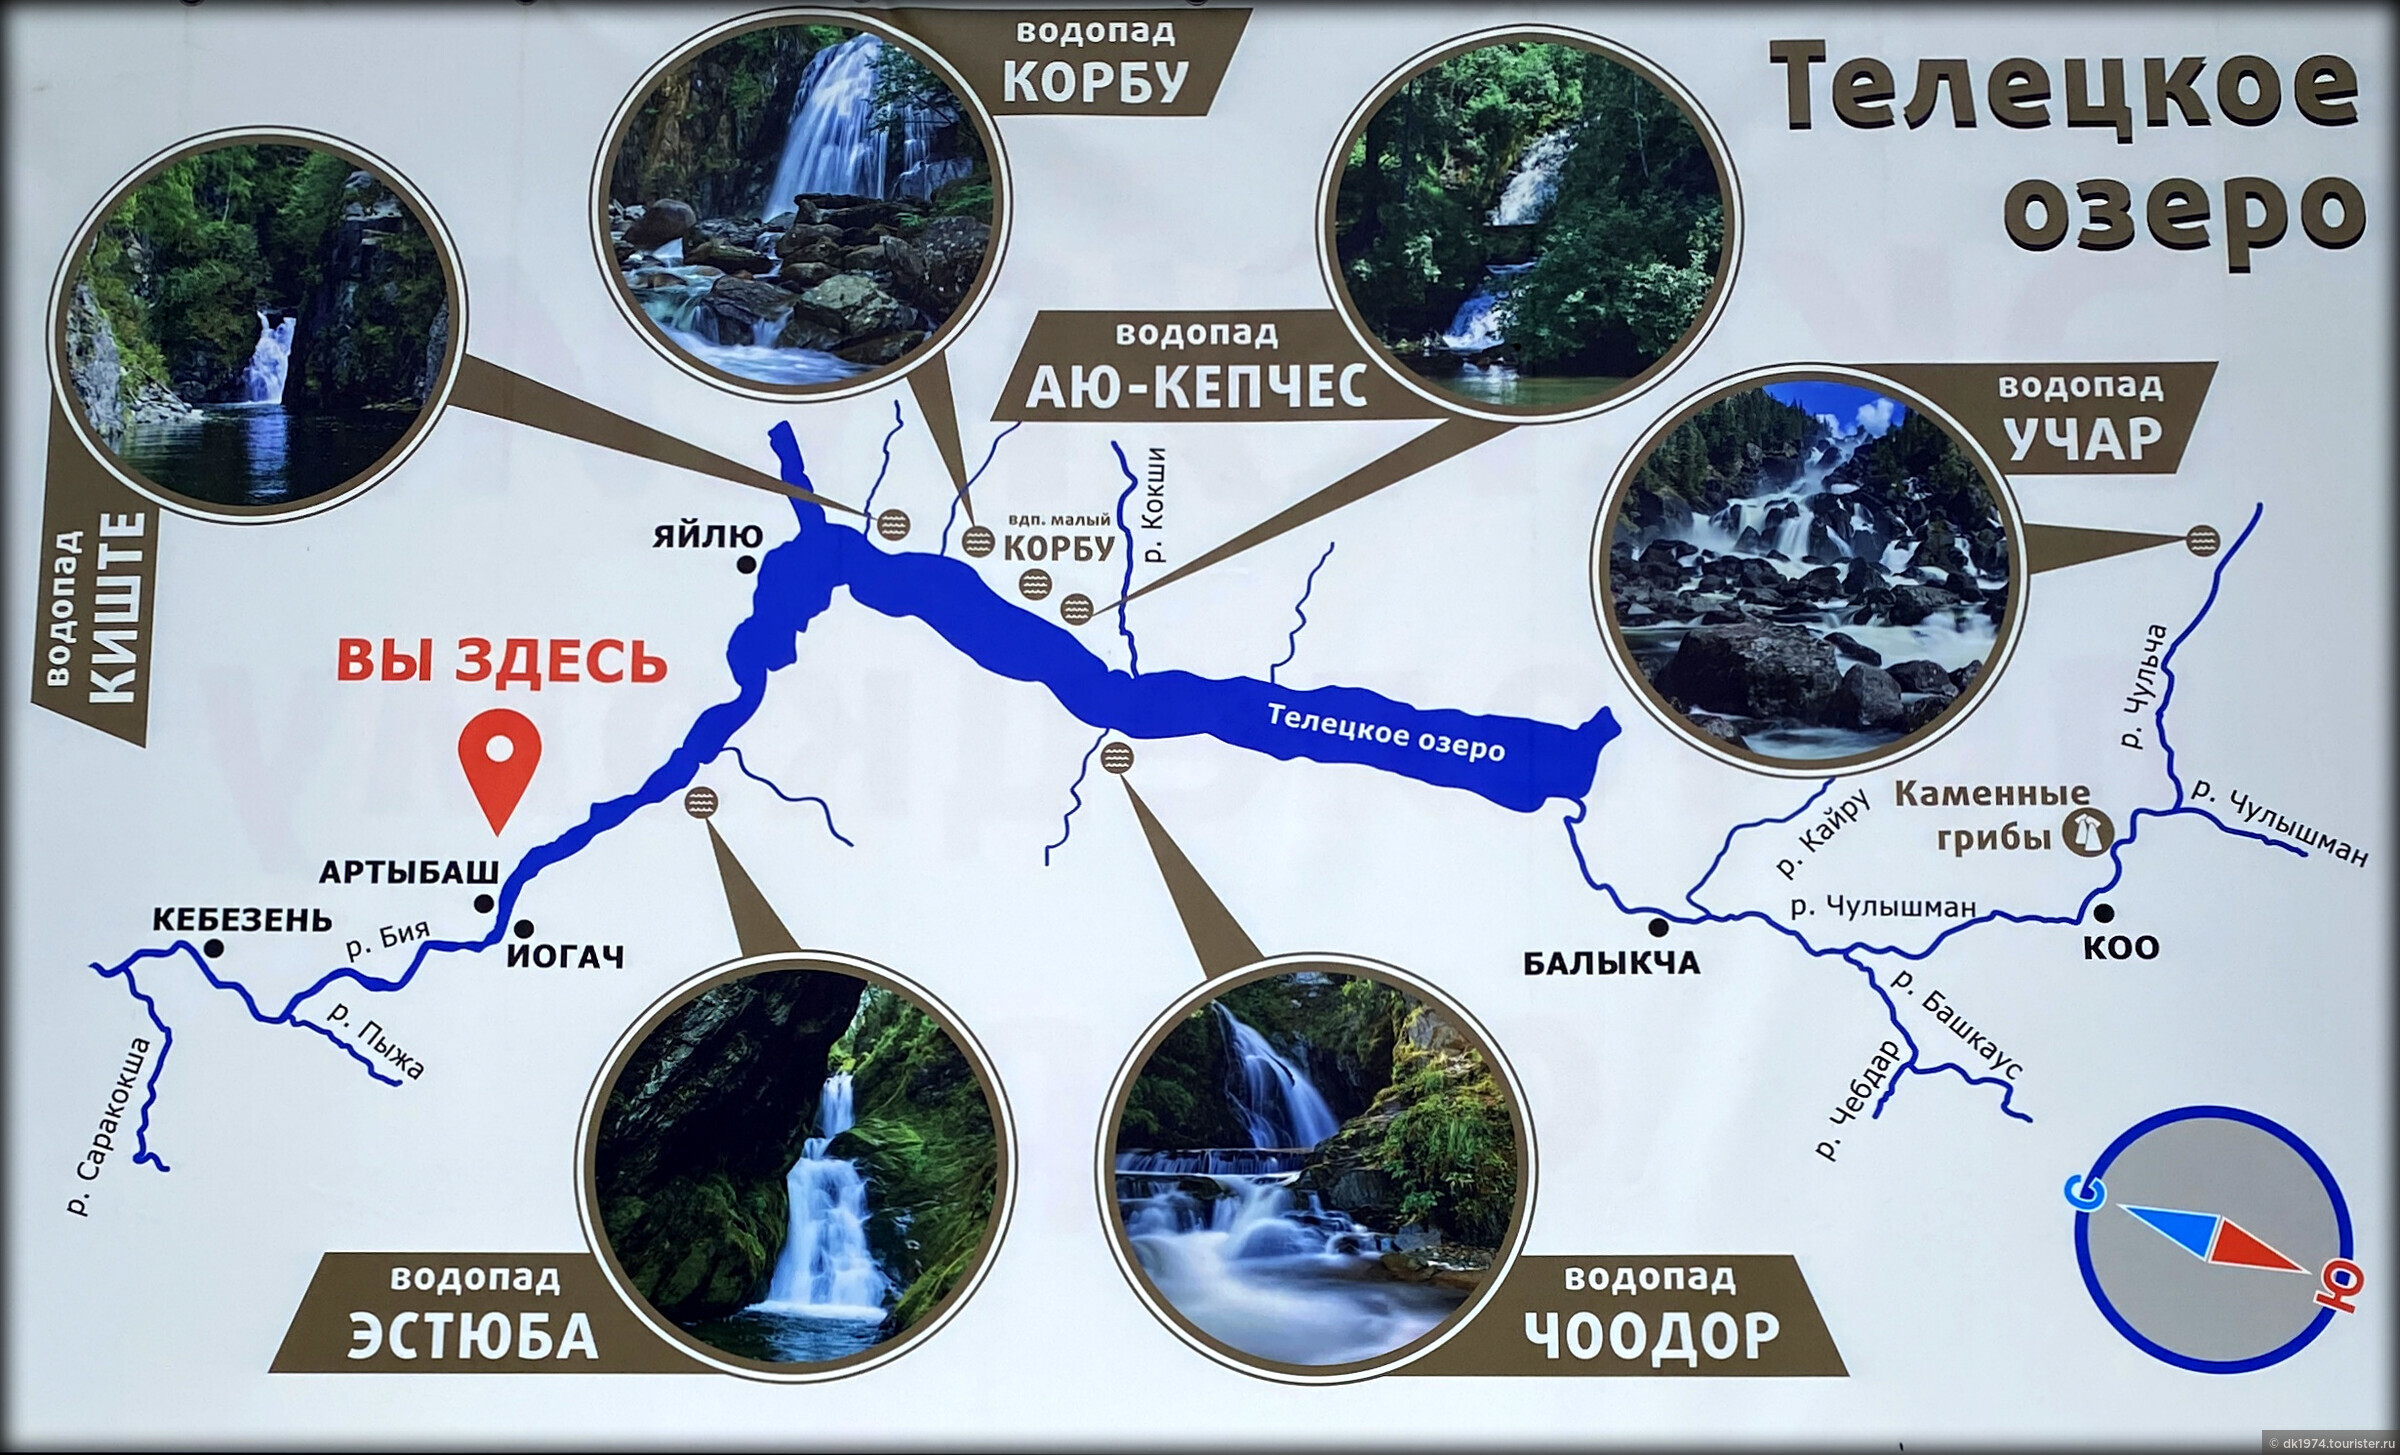 Телецкое озеро как добраться. Водопады Телецкого озера на карте. Телецкое озеро на карте. Туристическая карта Телецкого озера. Карта Телецкого озера с достопримечательностями.